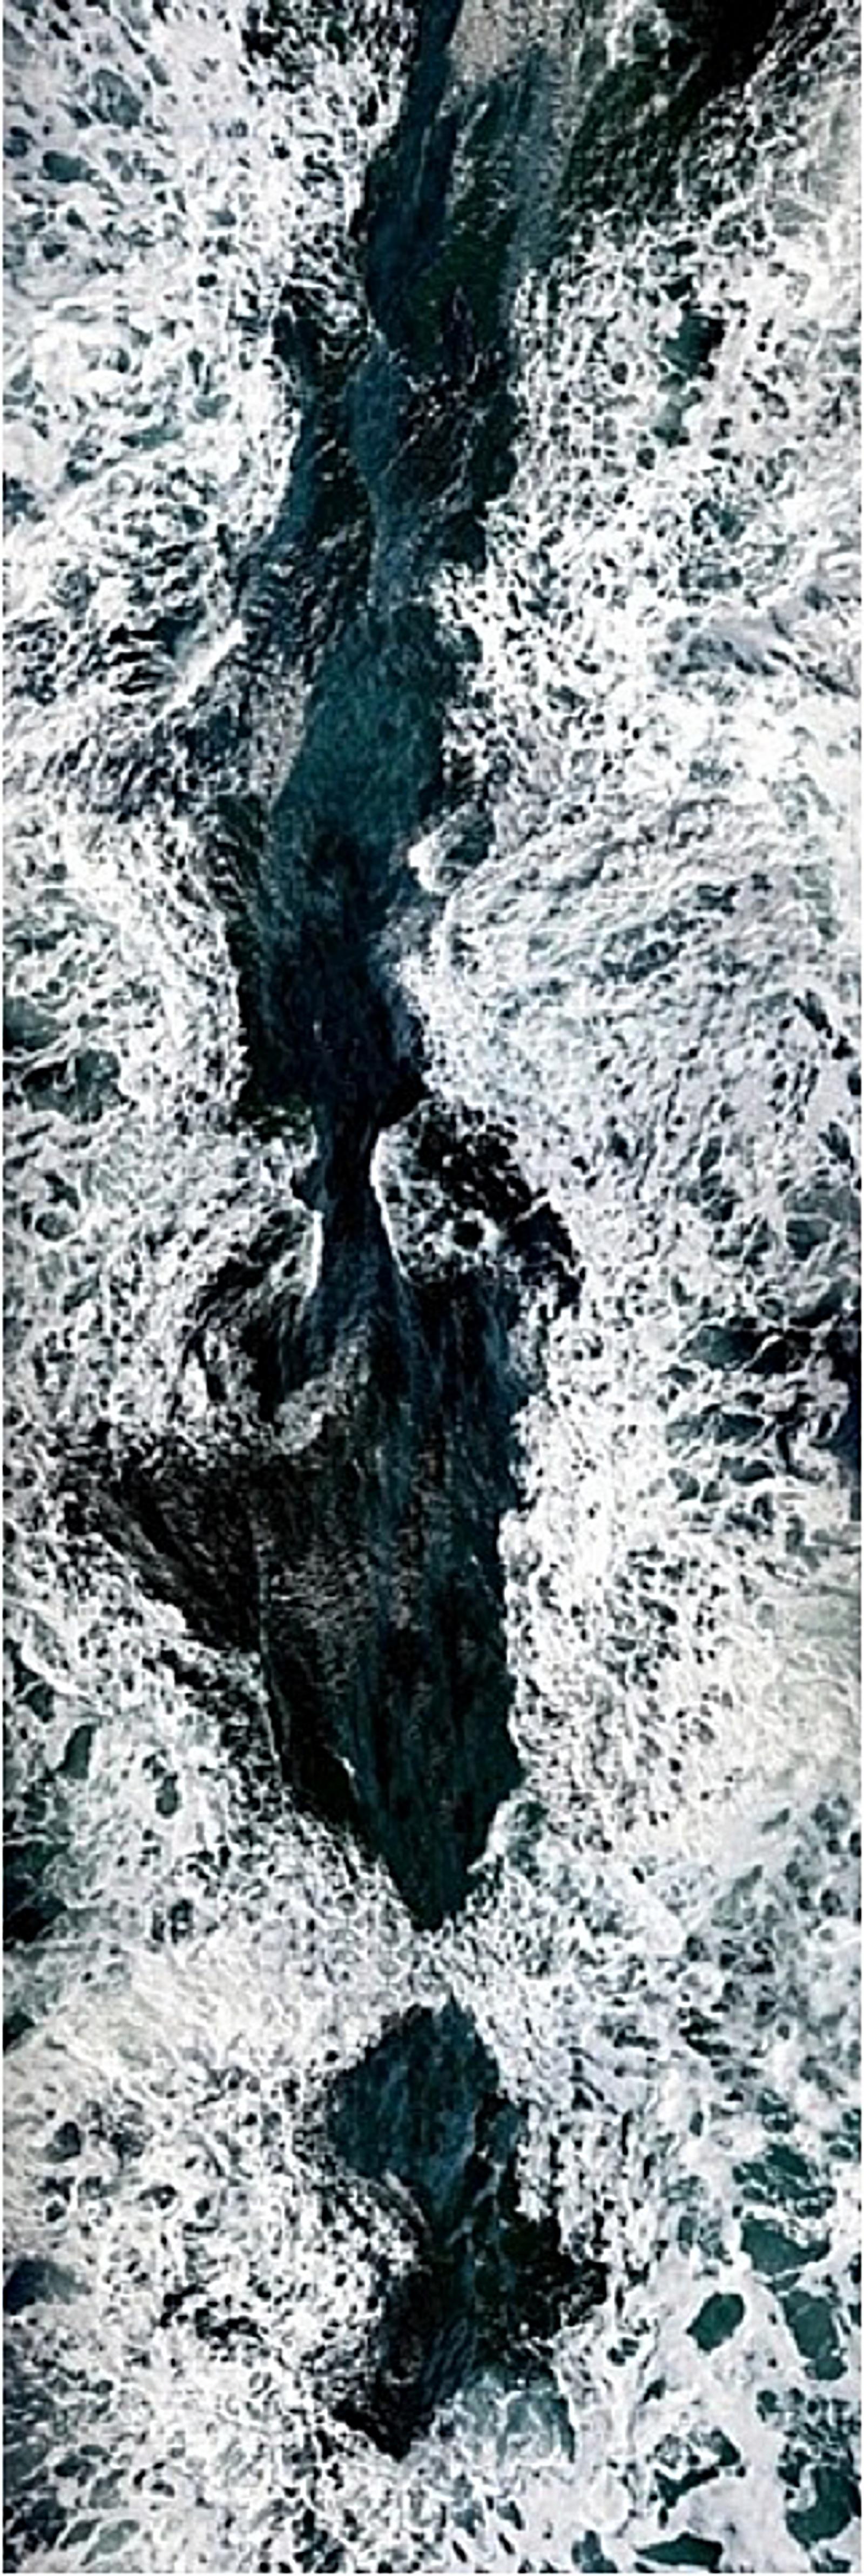 Unsichtbare Seelandschaft #2 Jun Ahn, Wasser, Fotografie, Wellen, Blau, Weiß, Natur